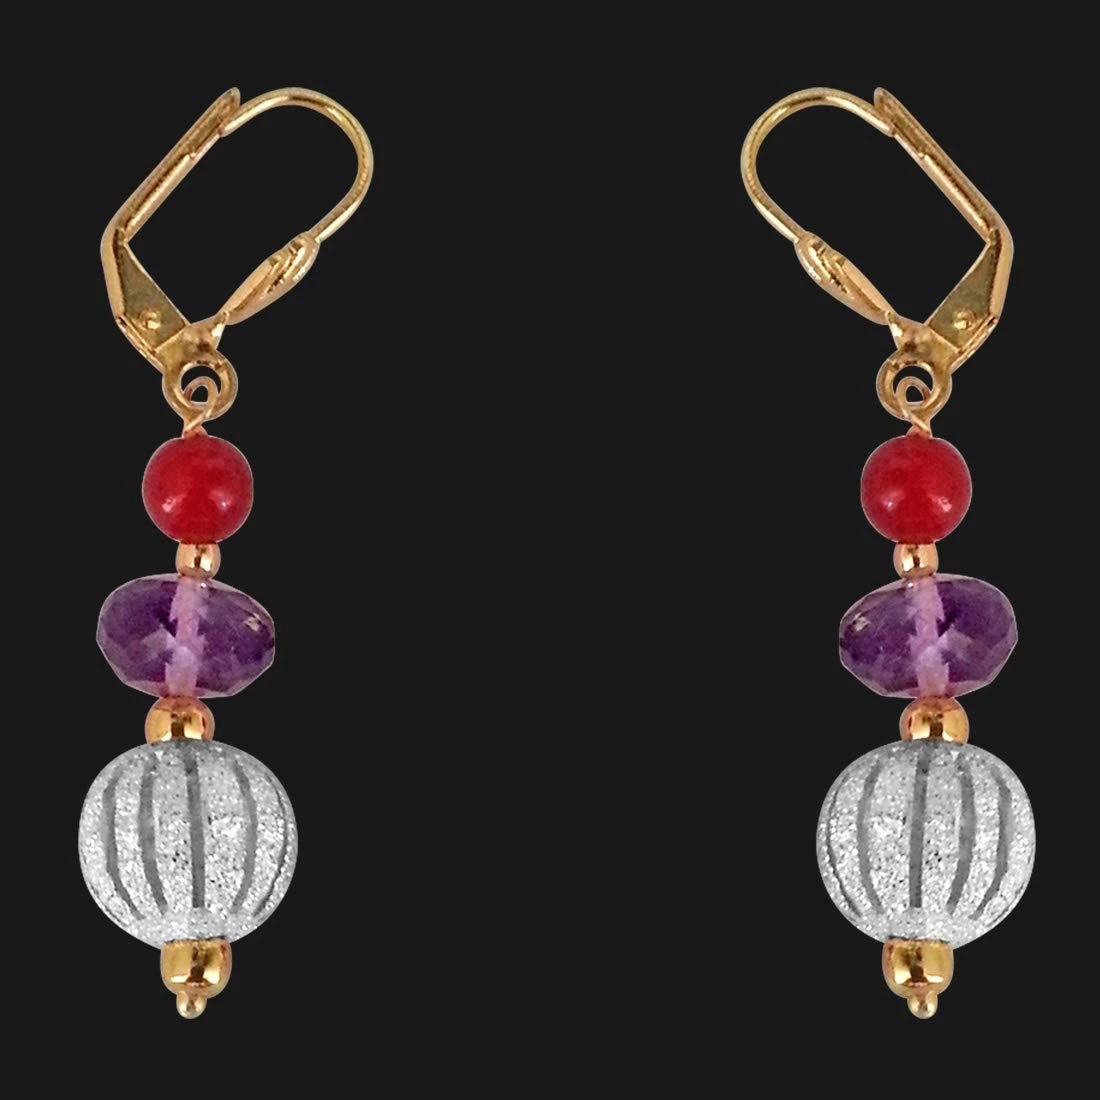 Fancy Purple Amethyst, Silver Plated Ball & Red Beads Earrings (SE178)